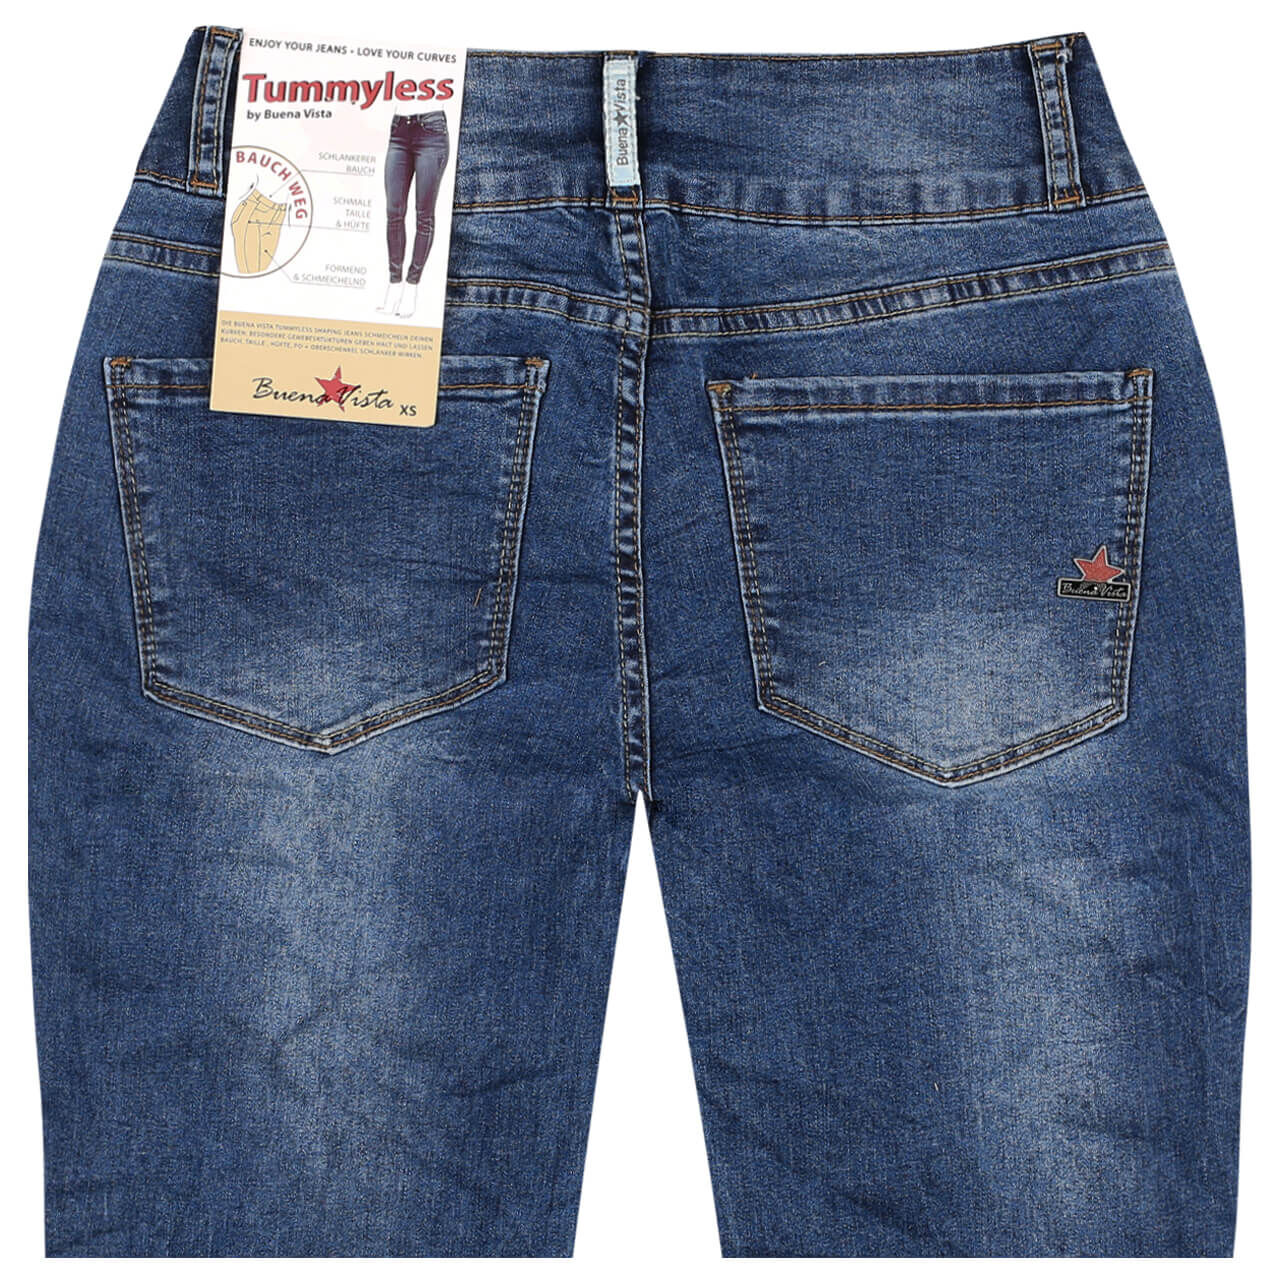 Buena Vista Jeans Tummyless Stretch Denim für Damen in Mittelblau verwaschen, FarbNr.: 2883